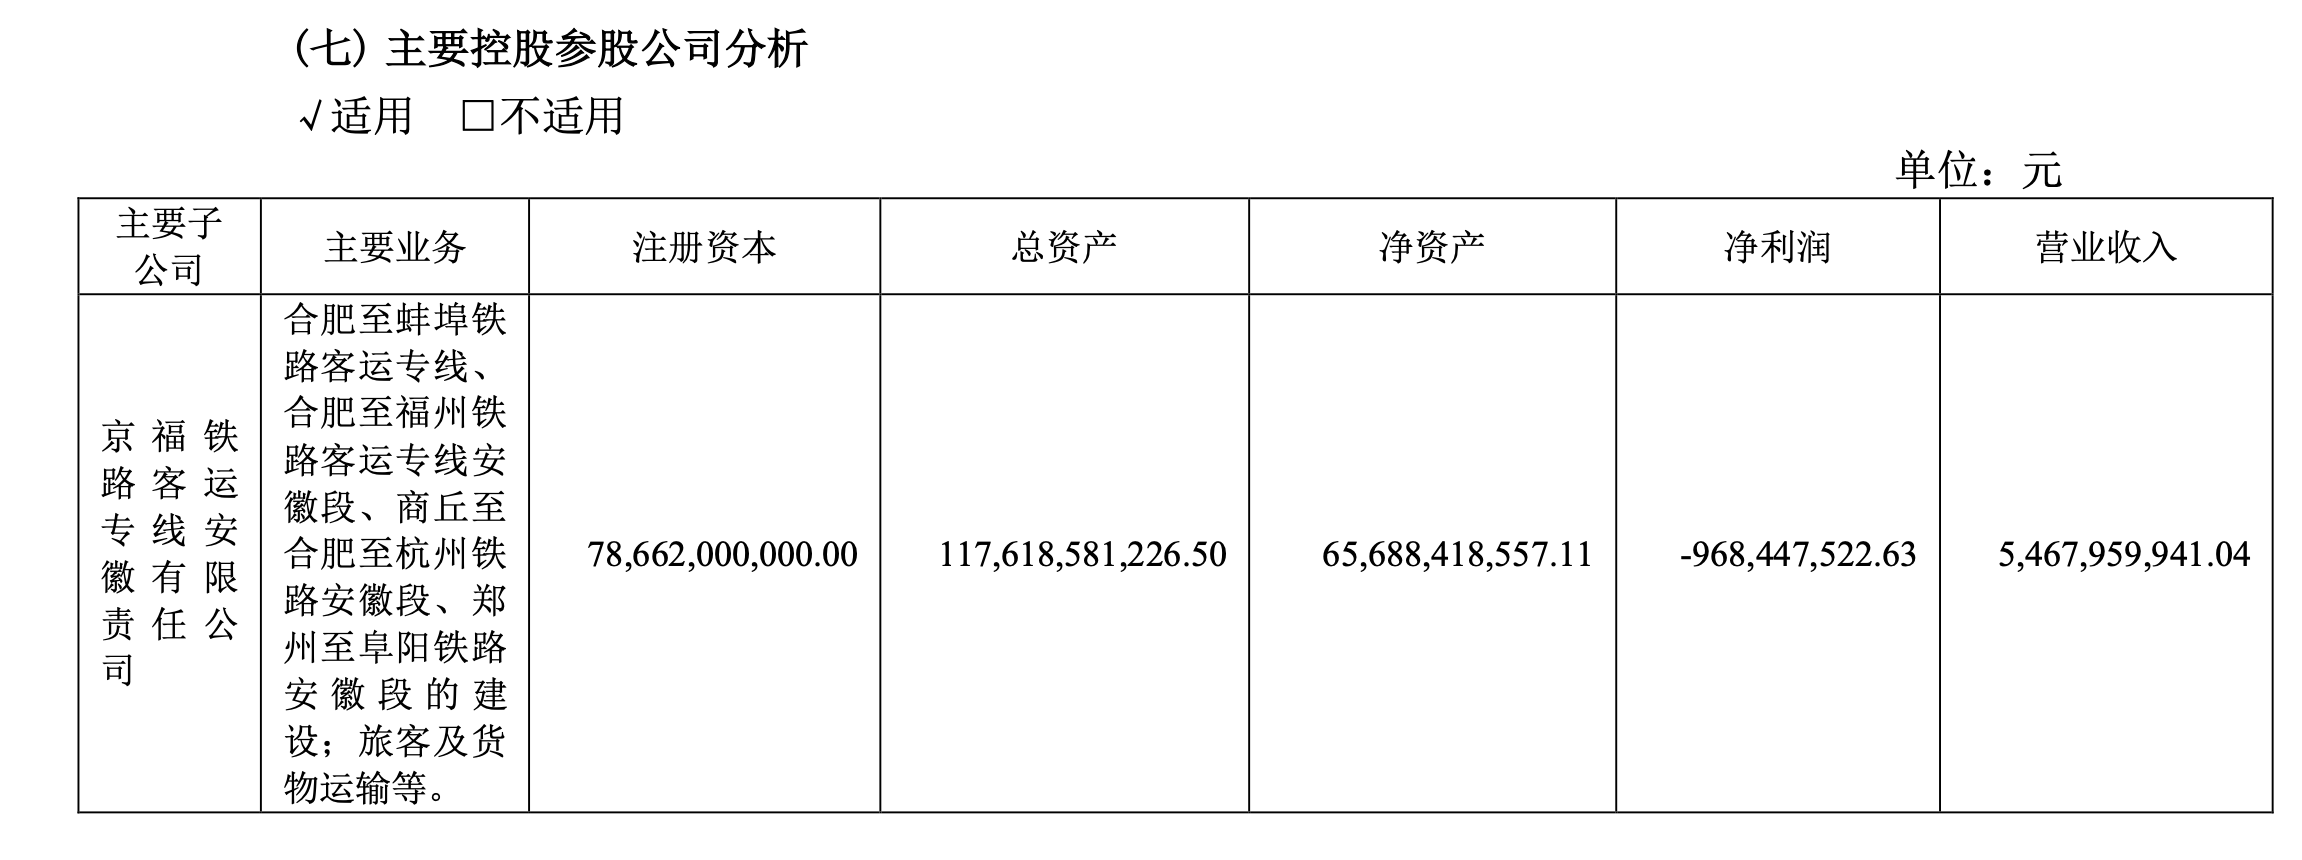 京沪高铁去年主要控股参股公司分析，来源于2023年年报